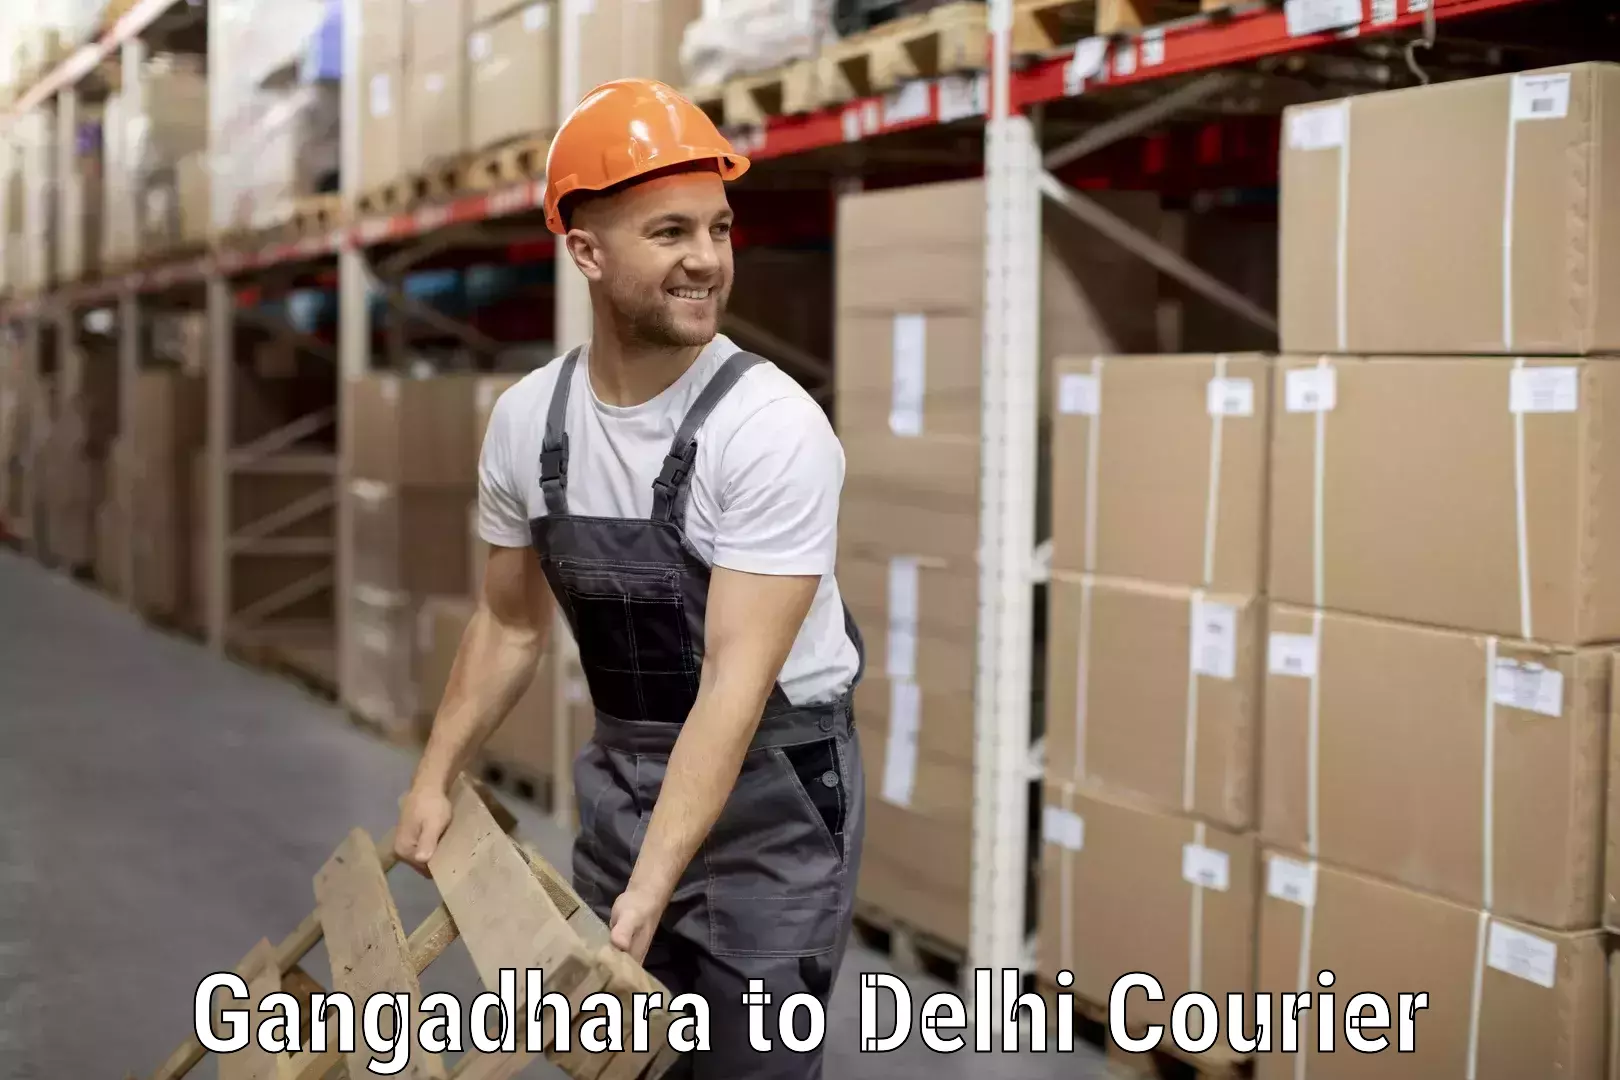 Luggage shipment processing Gangadhara to NIT Delhi